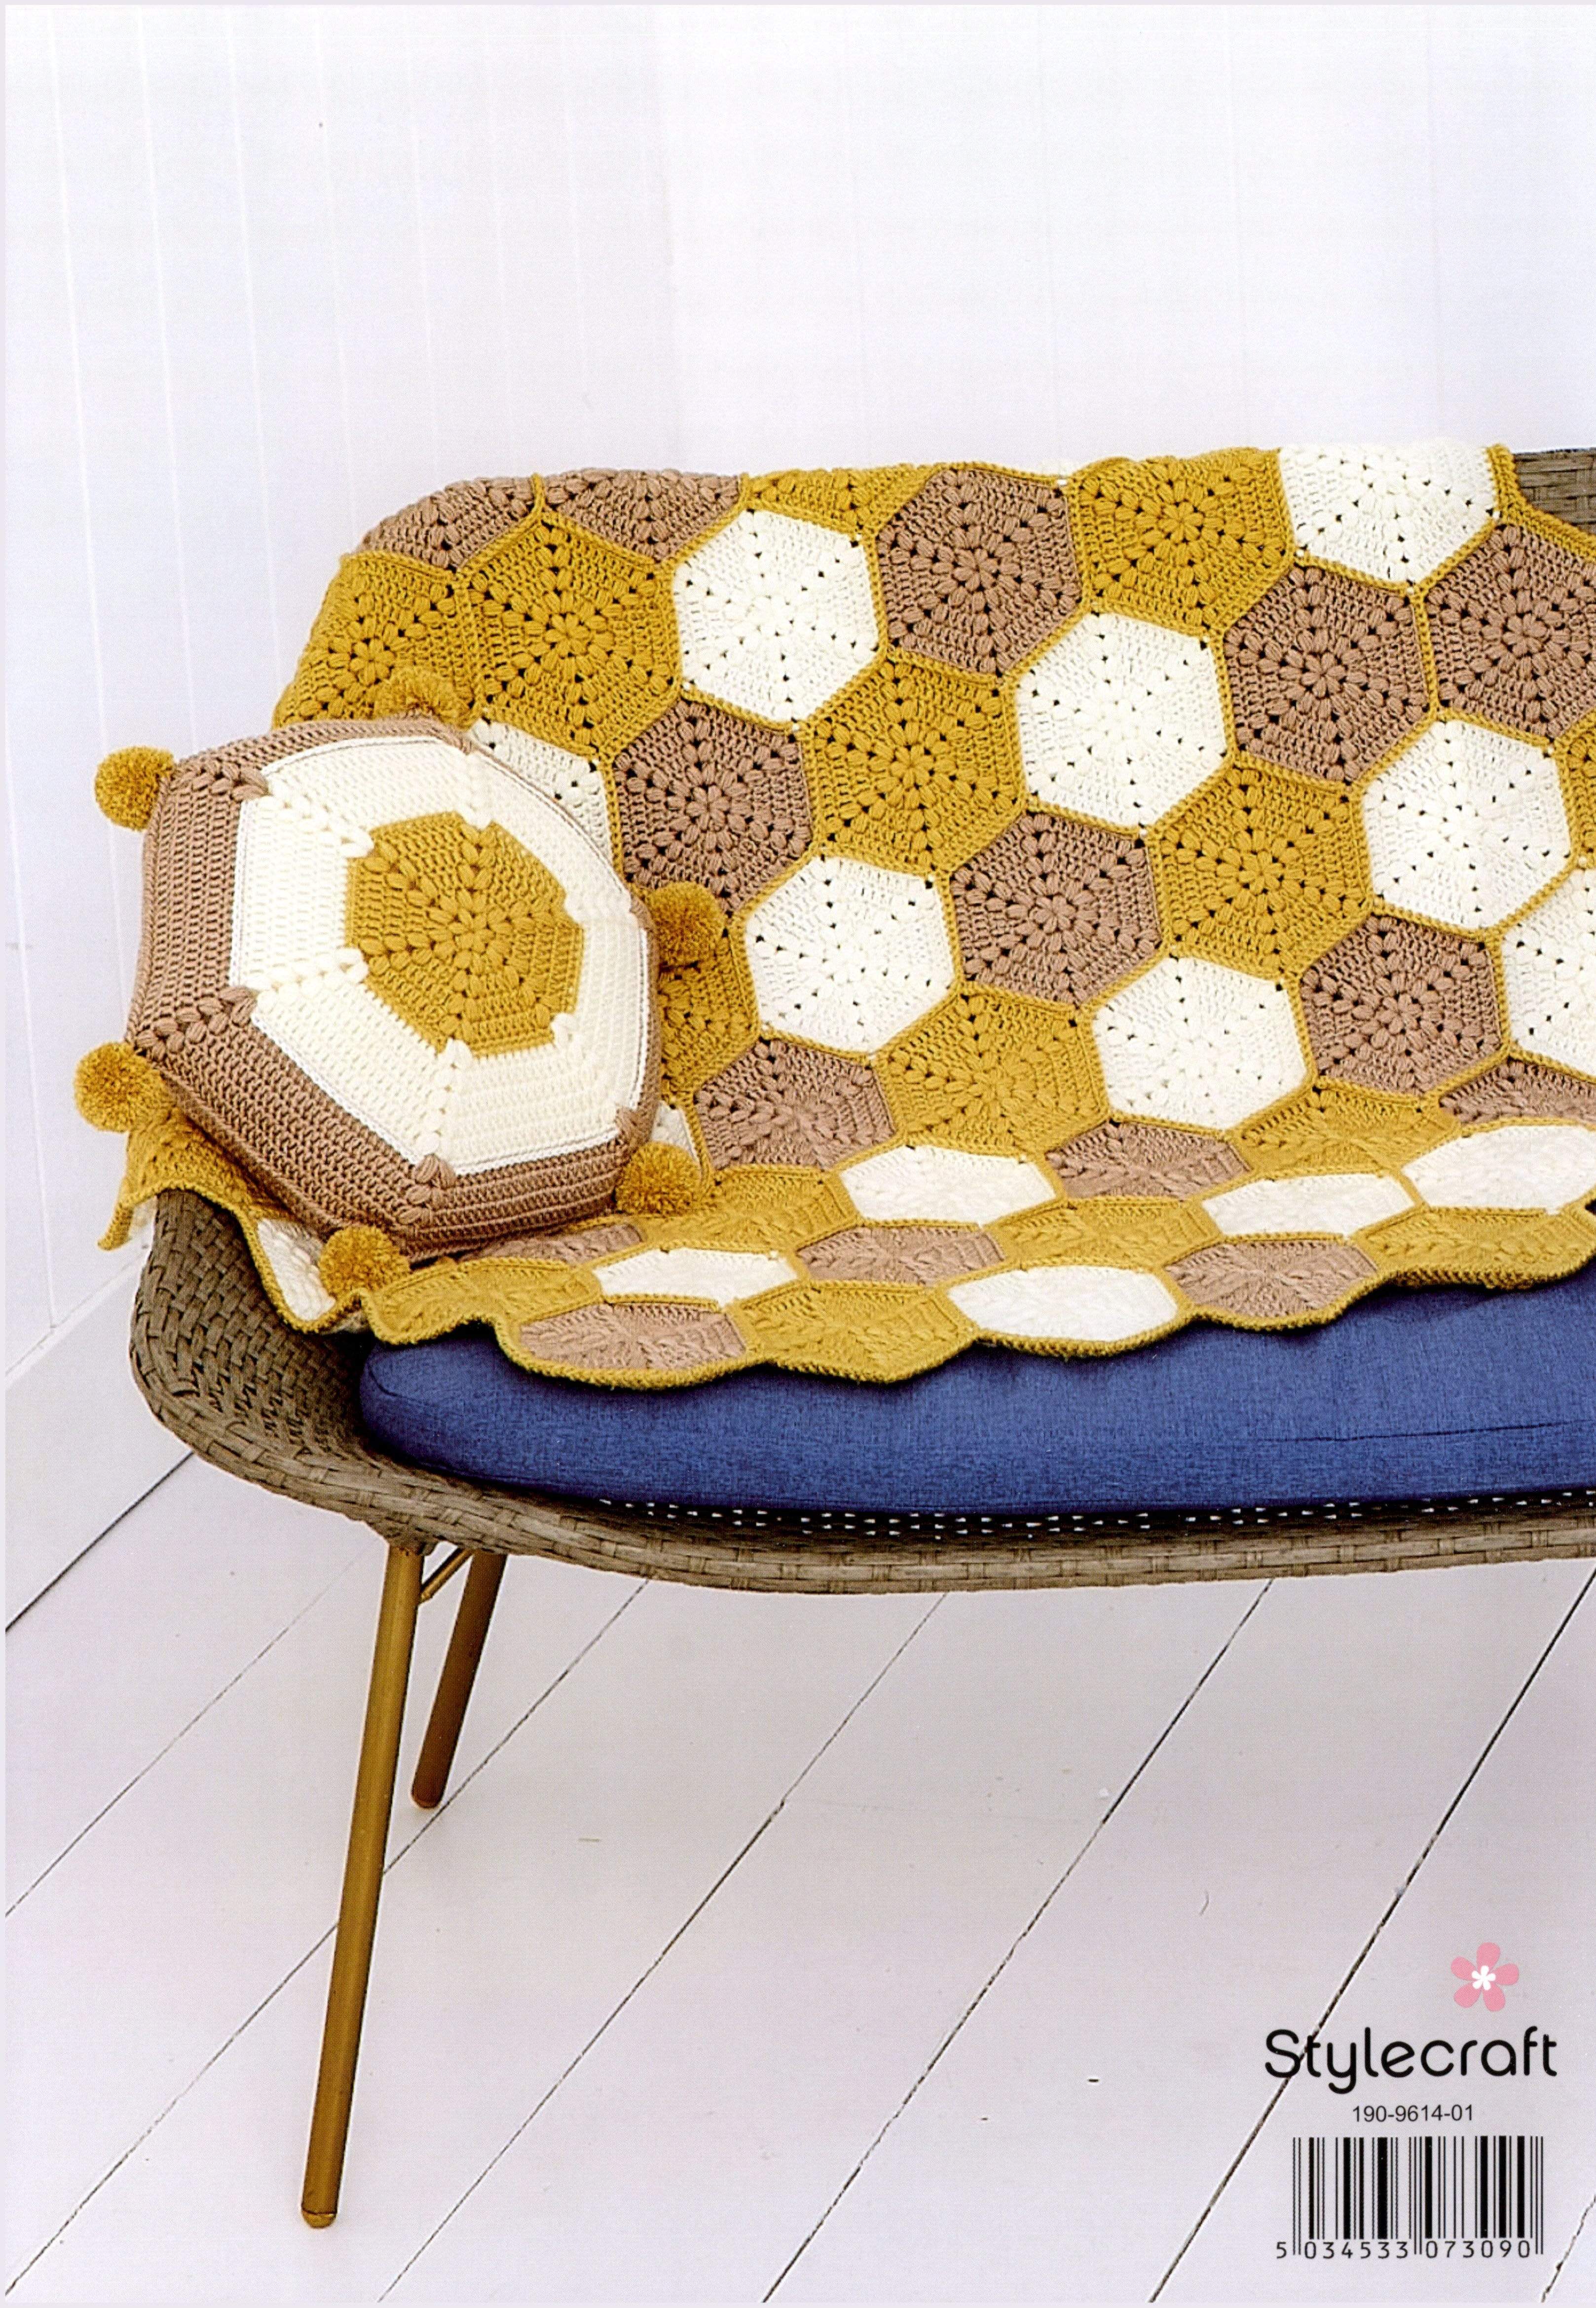 Stylecraft Patterns Stylecraft Bellissima DK - Honeycomb Blanket and Cushion (9614) 5034533073090